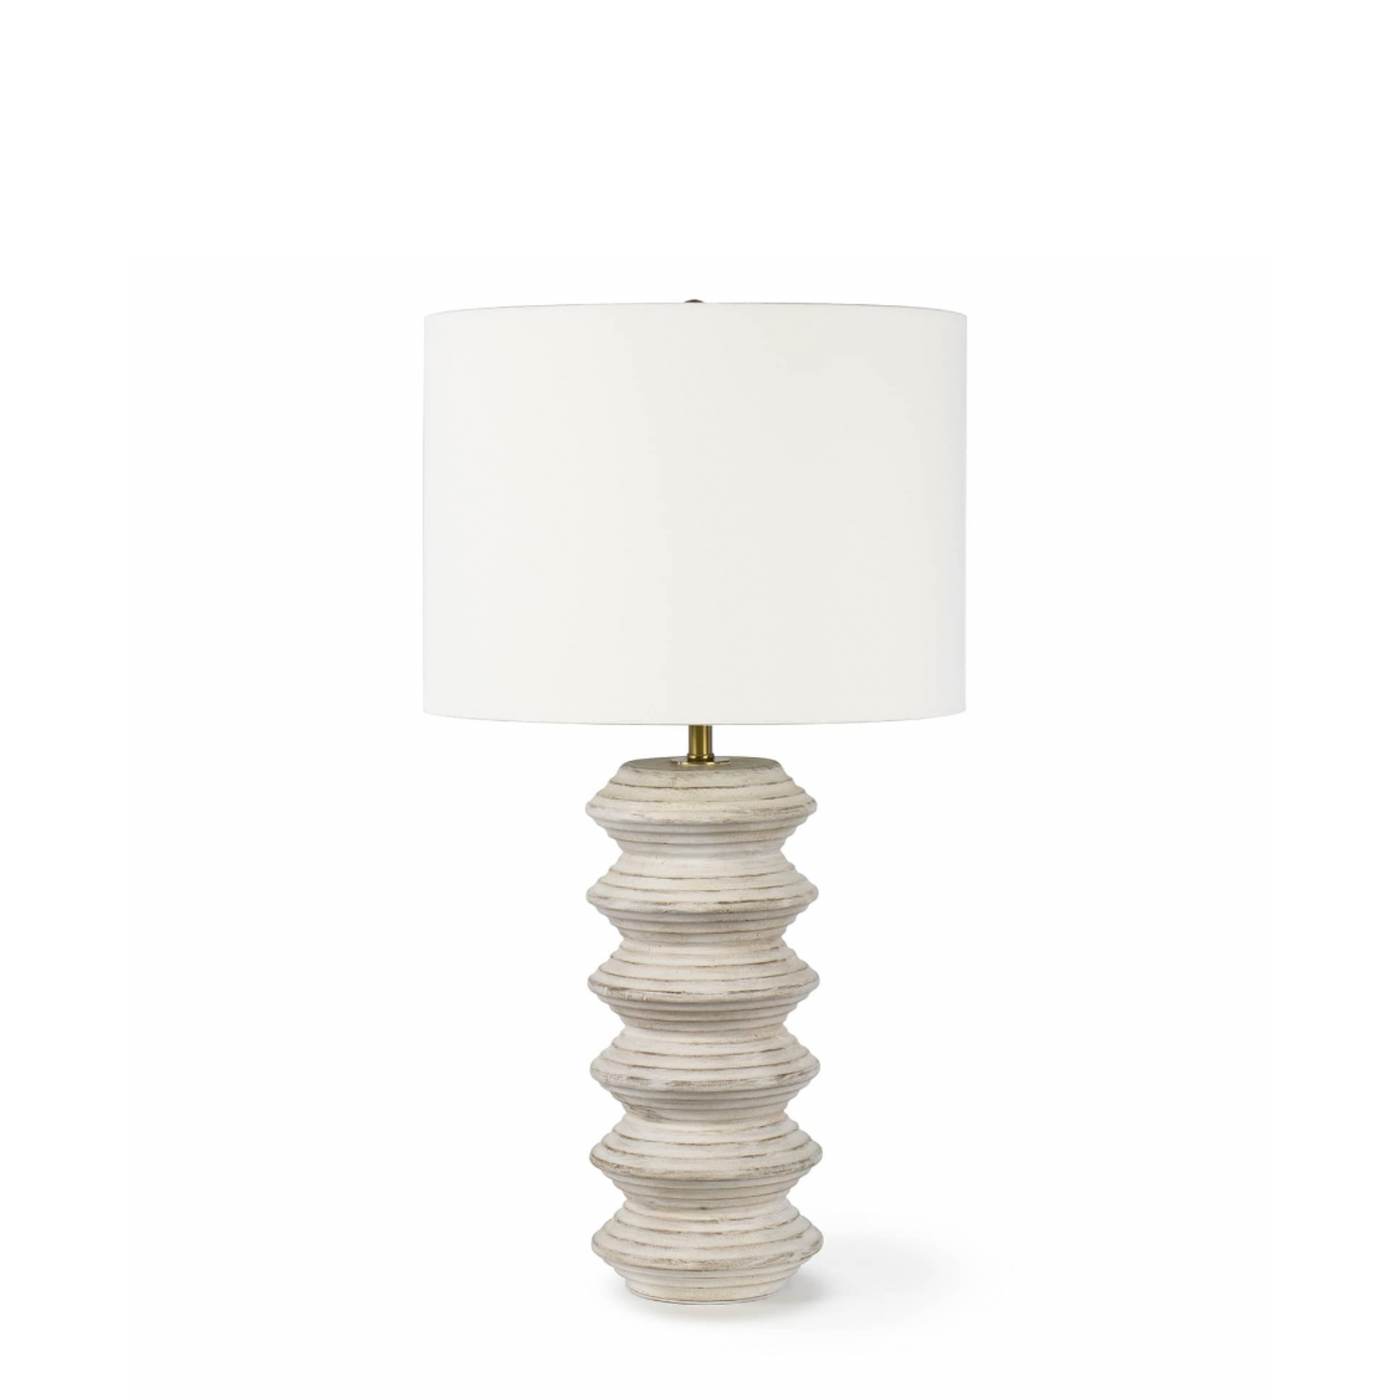 Nova Wood Table Lamp | Newport Lamp And Shade | Located in Newport, RI